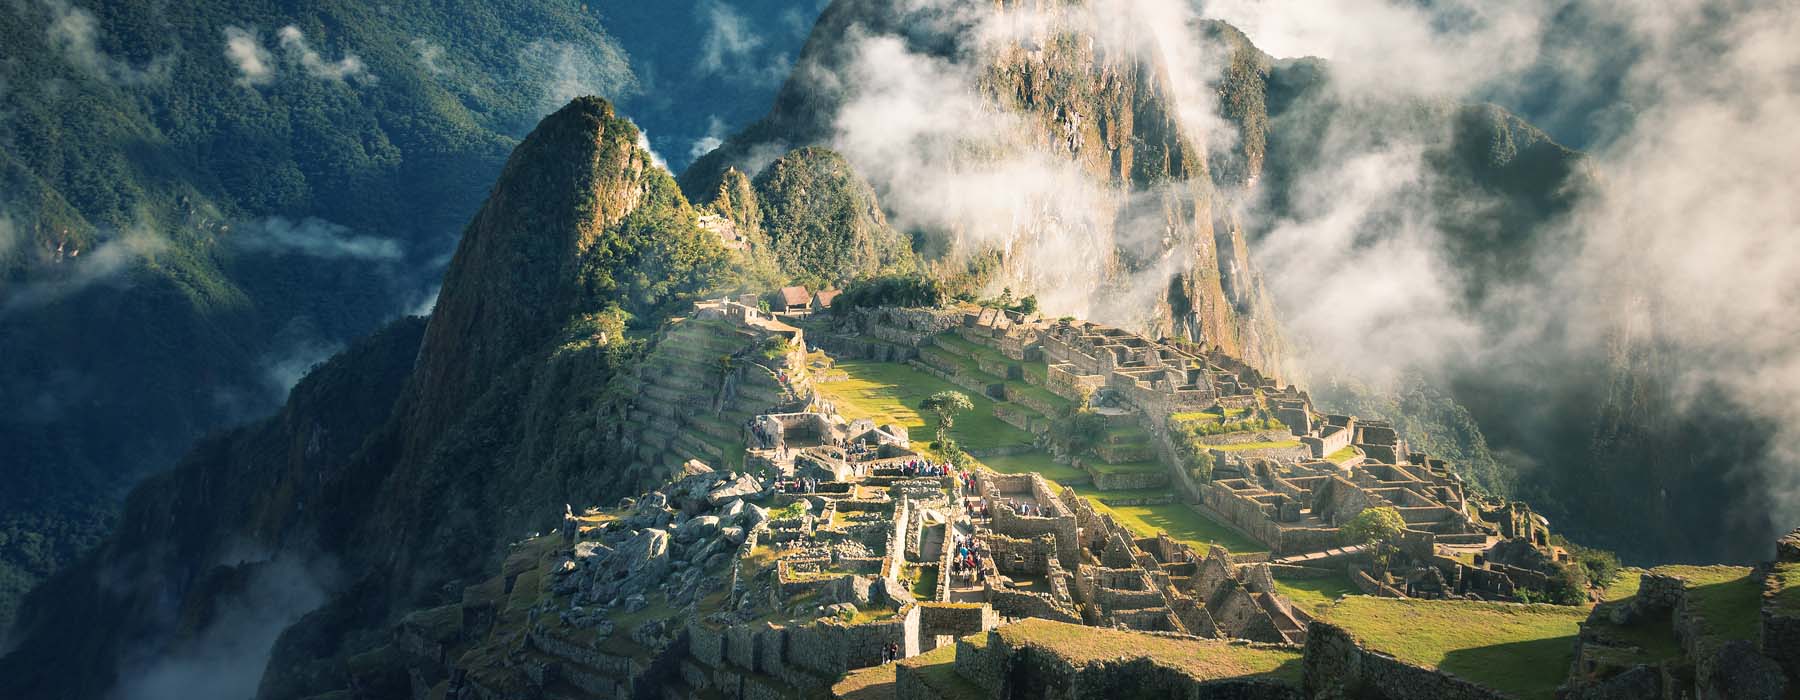 Peru<br class="hidden-md hidden-lg" /> October Holidays